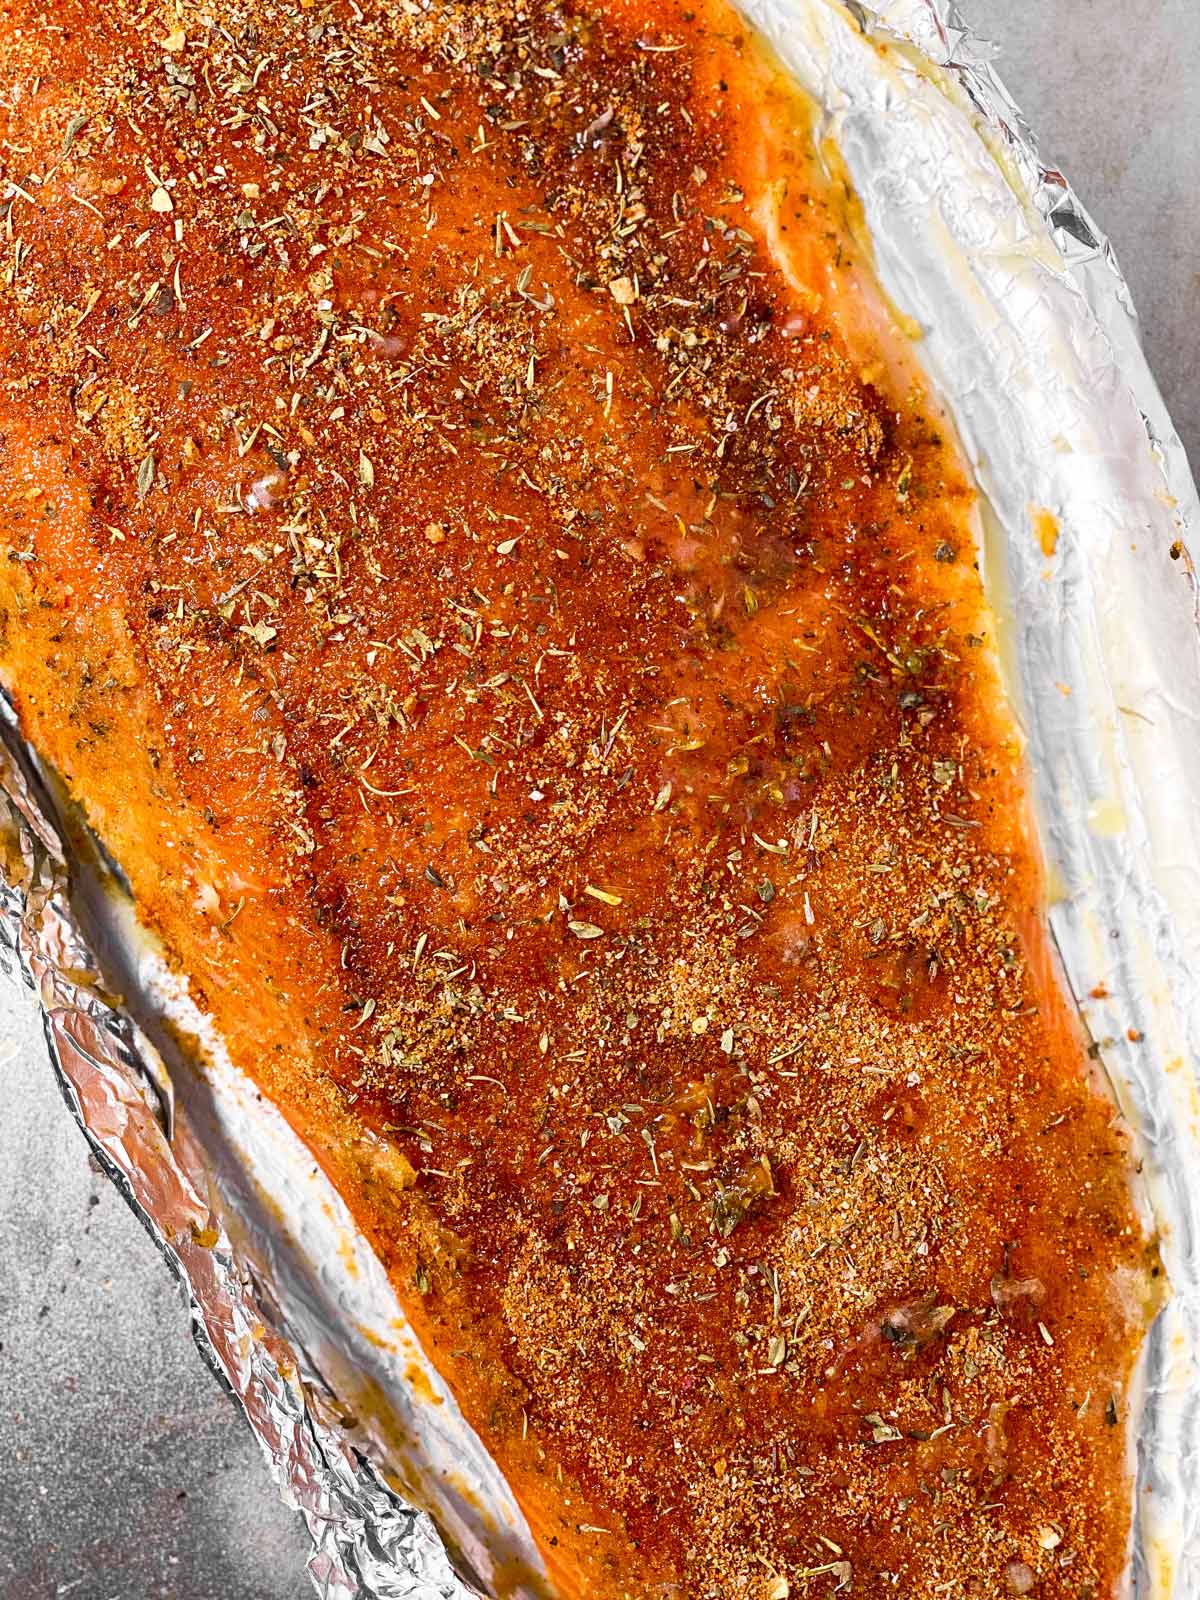 seasoned raw salmon fillet on foil lined baking sheet